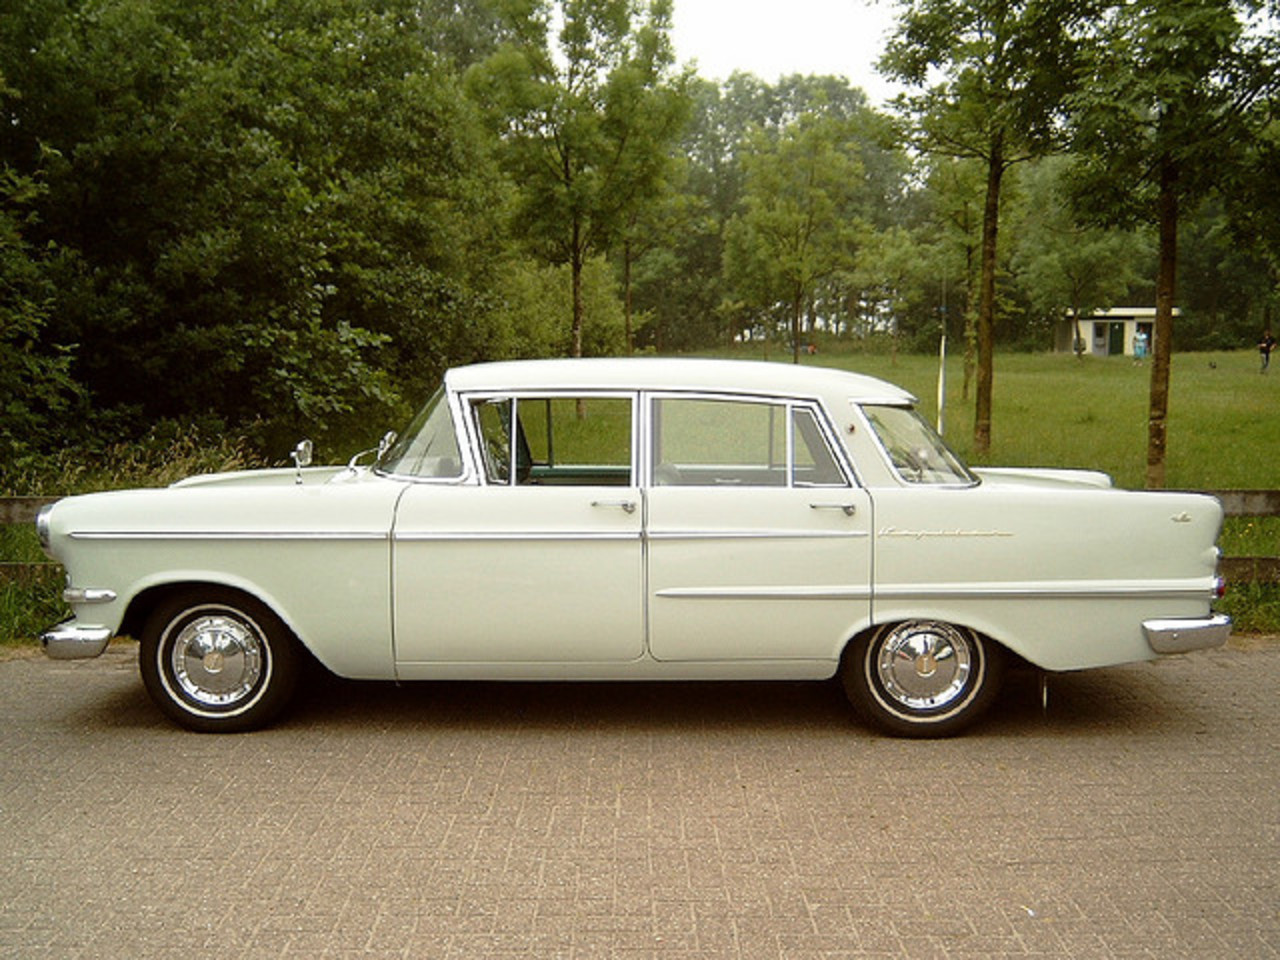 Opel KapitÃ¤n de Luxe 1960 / Flickr - Partage de photos!